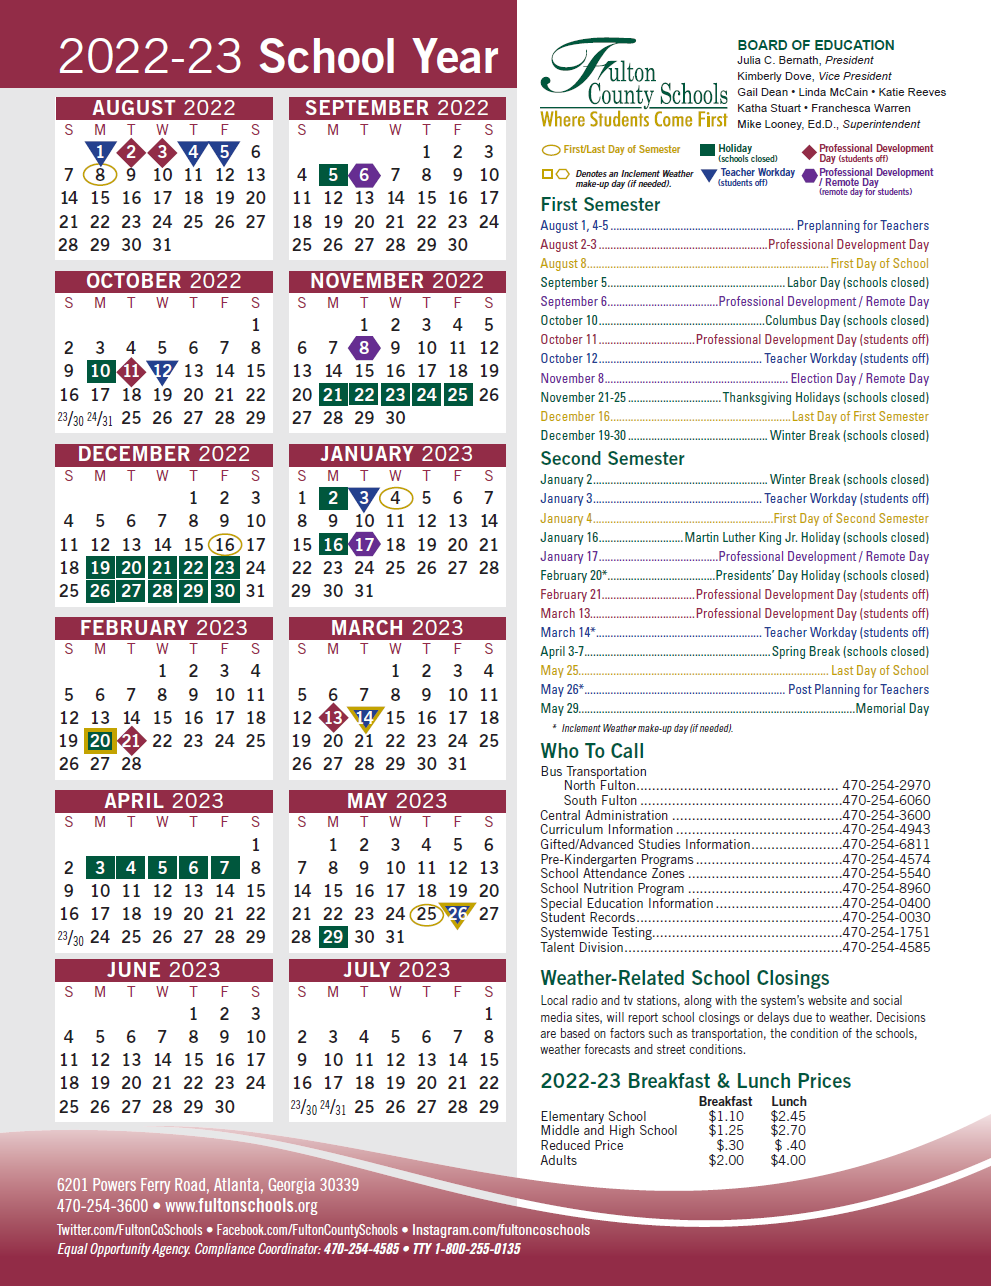 fulton-county-calendar-countycalendars